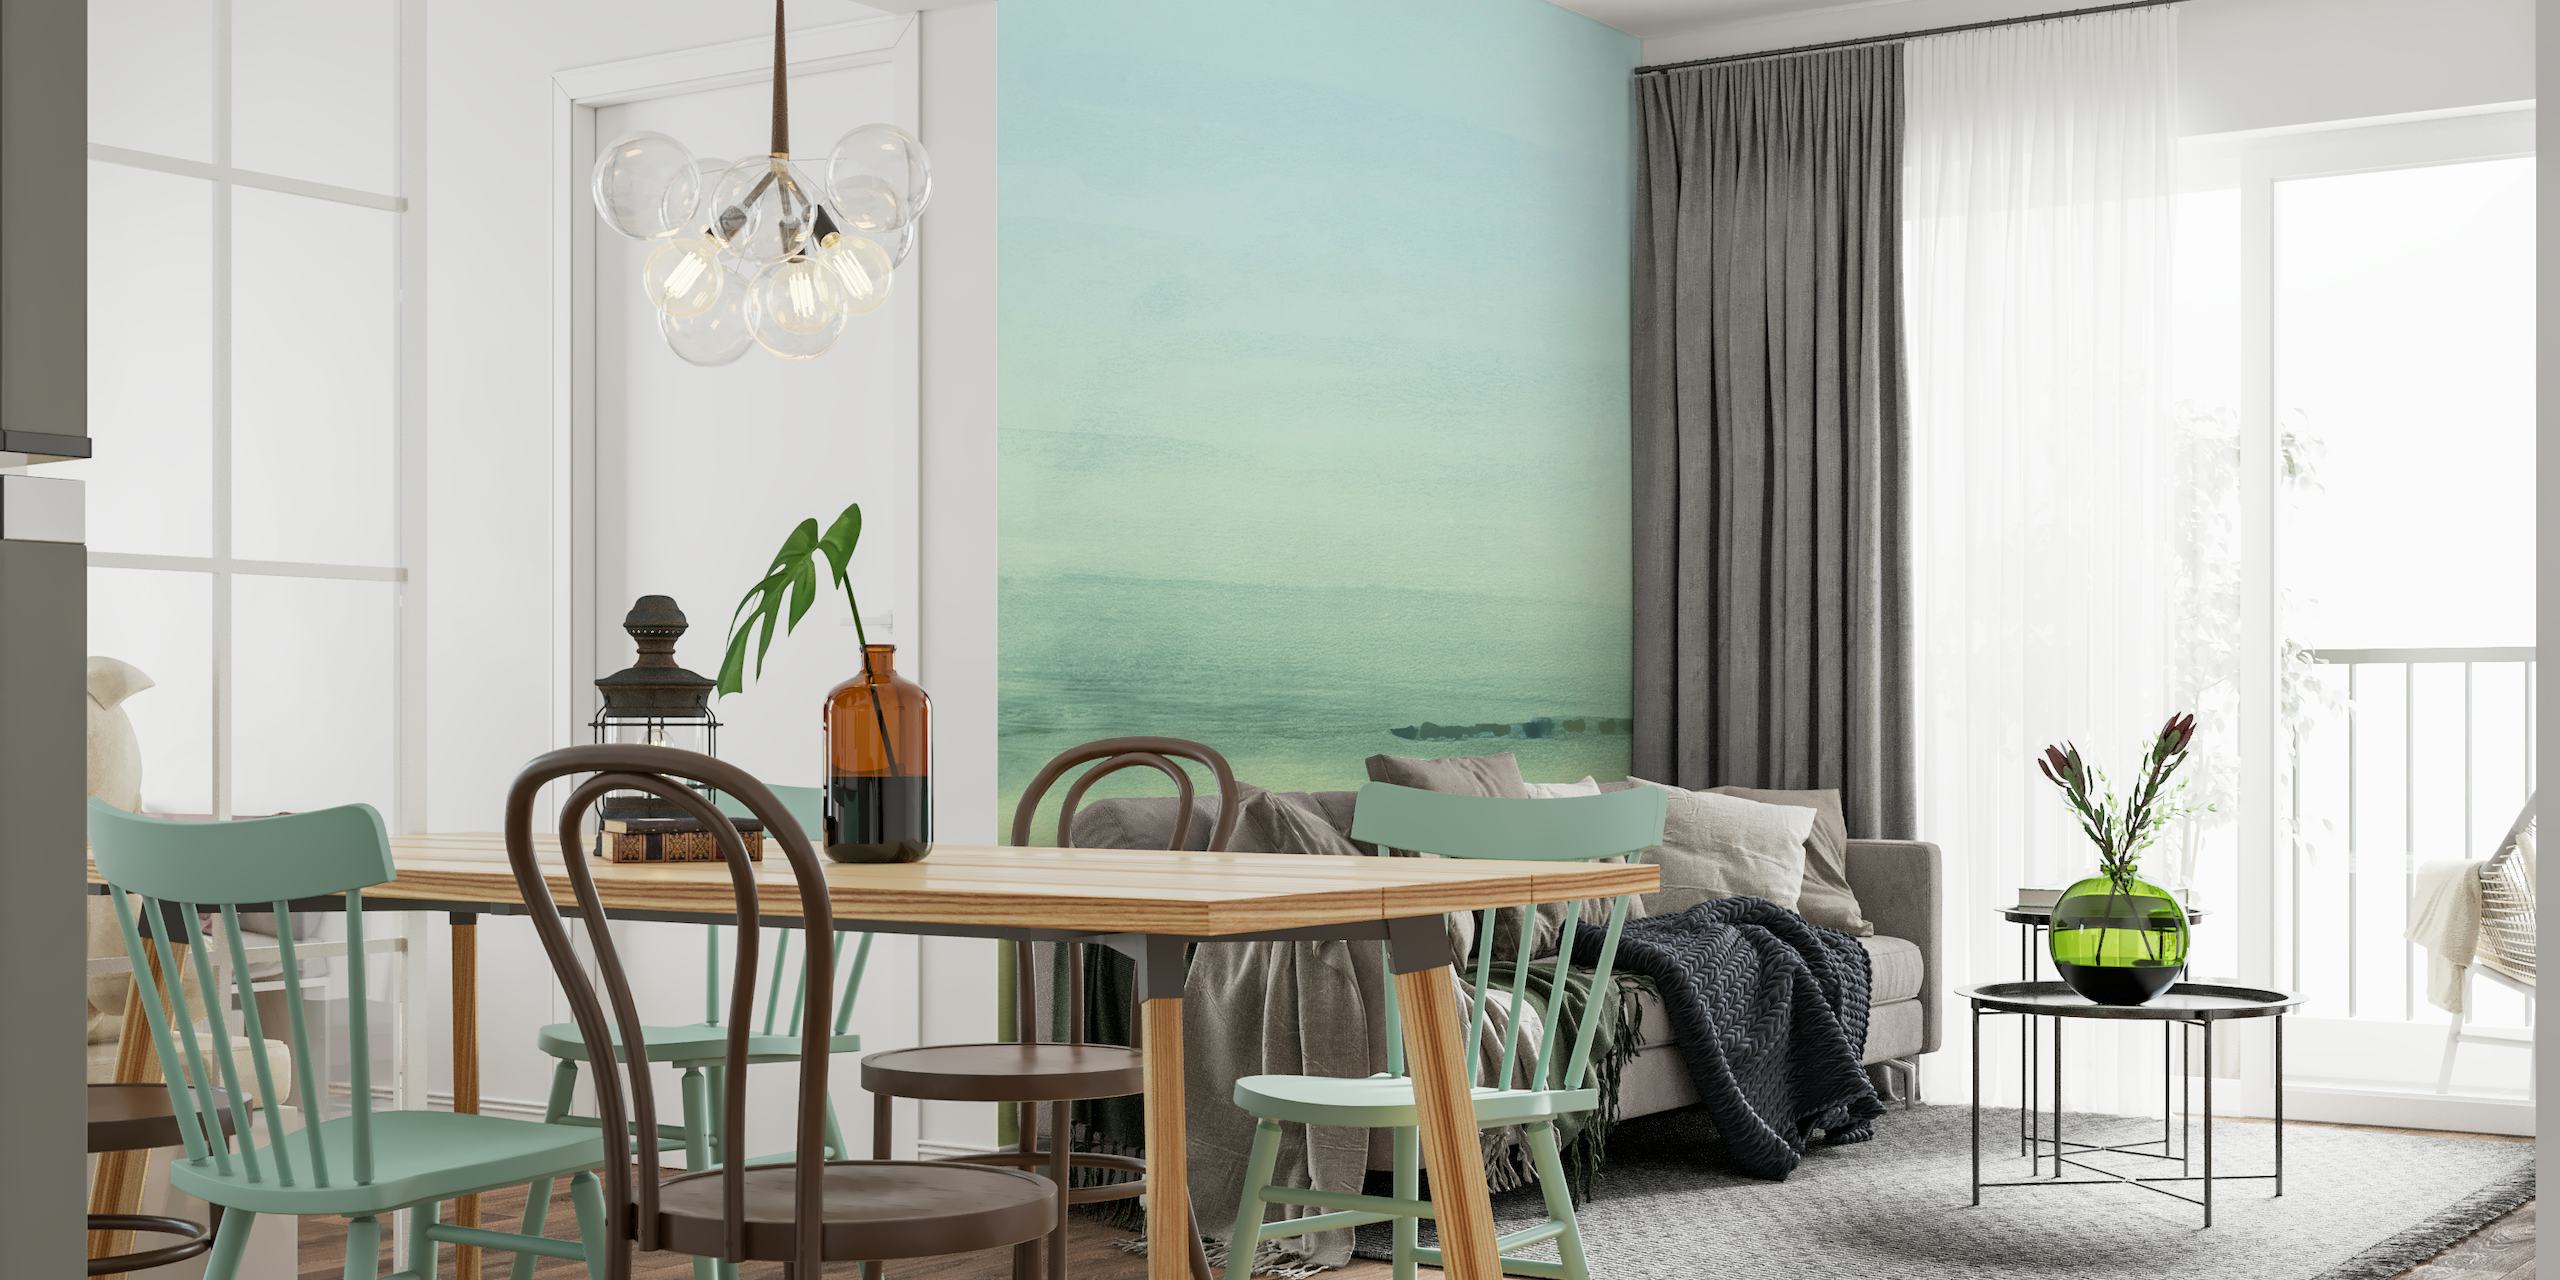 Mural de parede abstrato em aquarela esverdeada representando um horizonte tranquilo